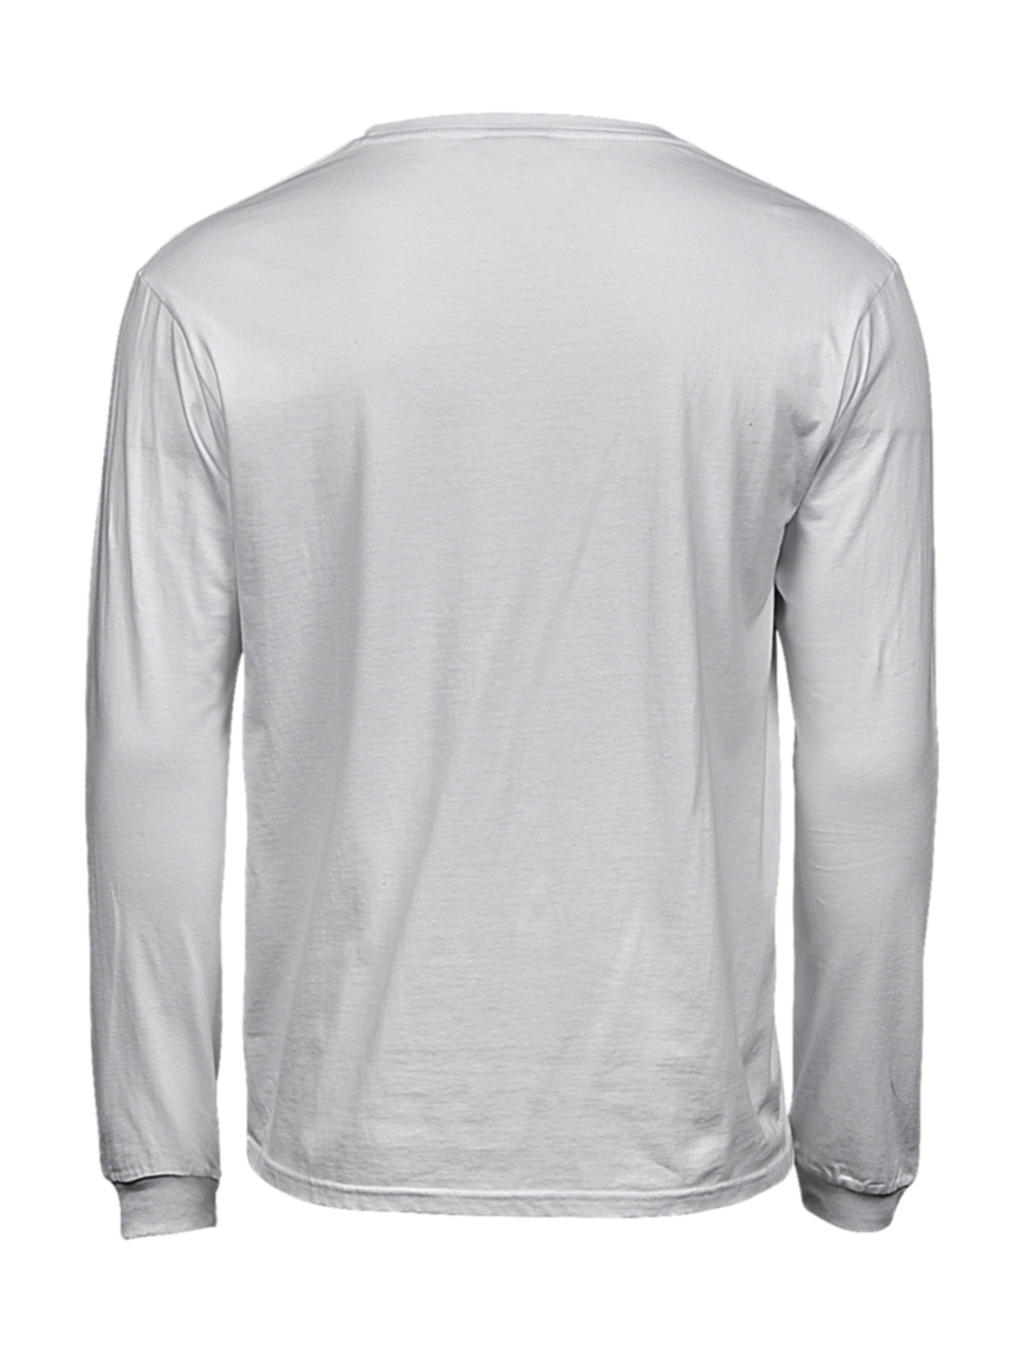 Moderné tričko s dlhými rukávmi Sof Tee - white